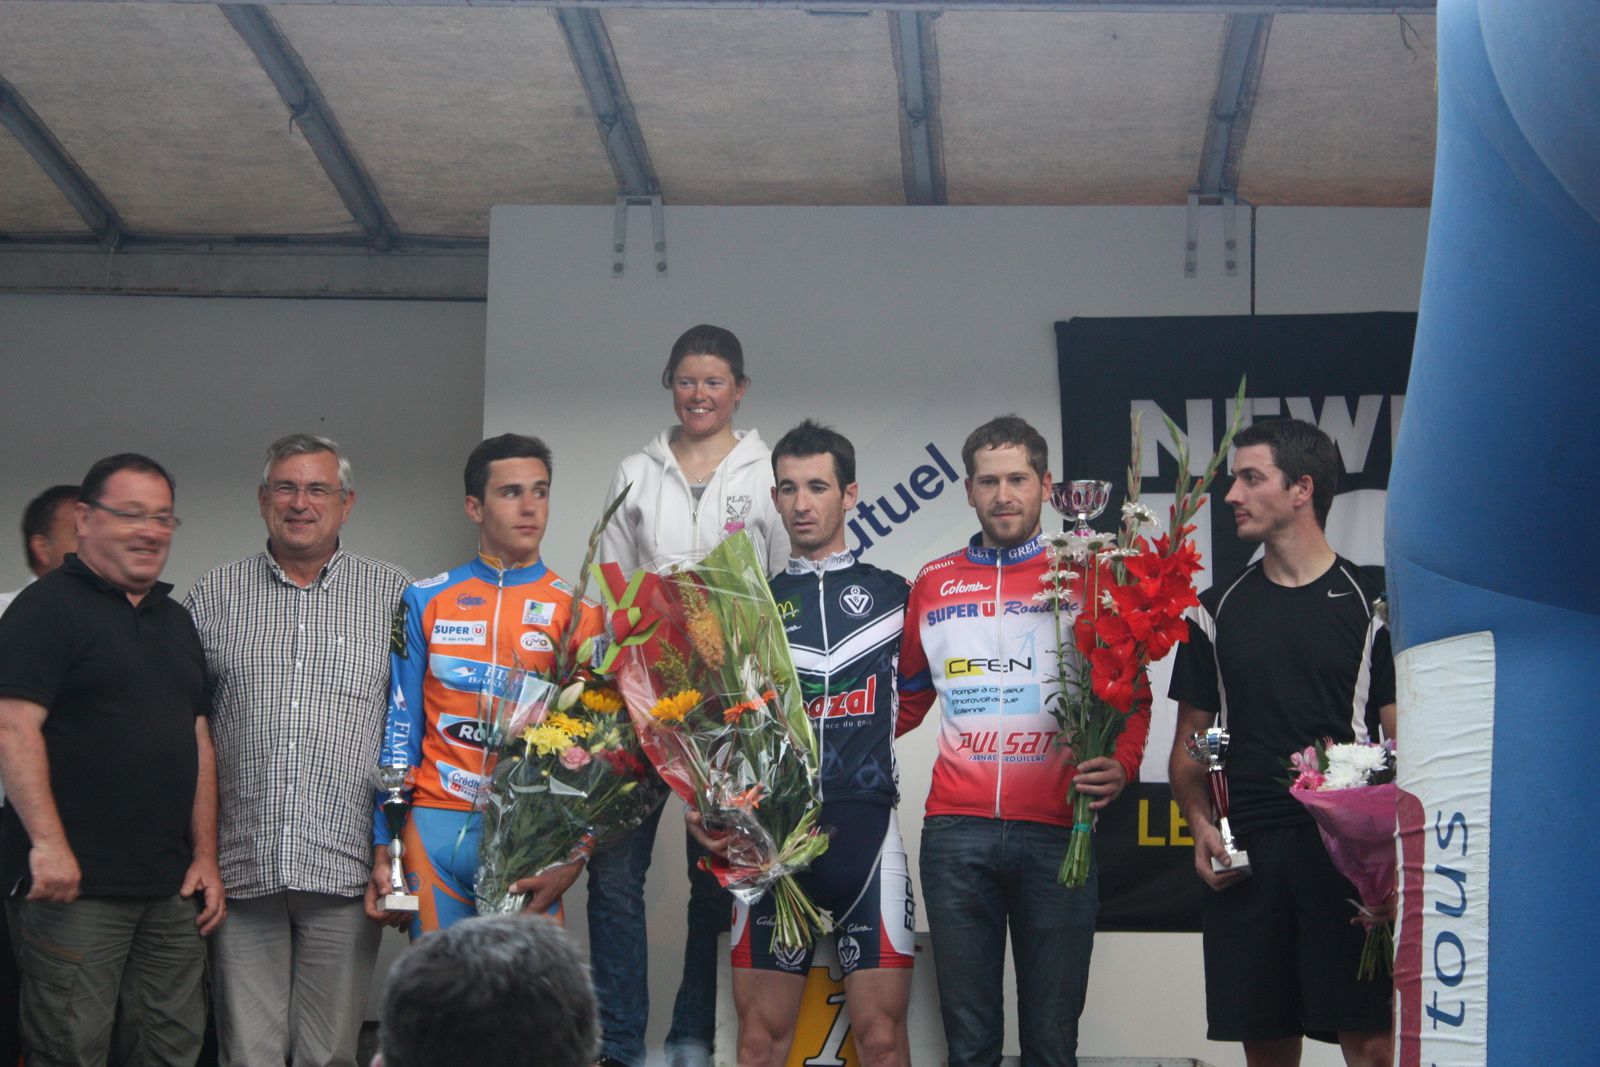 Le  vainqueur  récompensé  par  Aurore  VERHOEVEN  ainsi  que  le  1er  junior  Louis  BODIN AMIEL  et  le  1er  PC  Grégory  NATIVEL